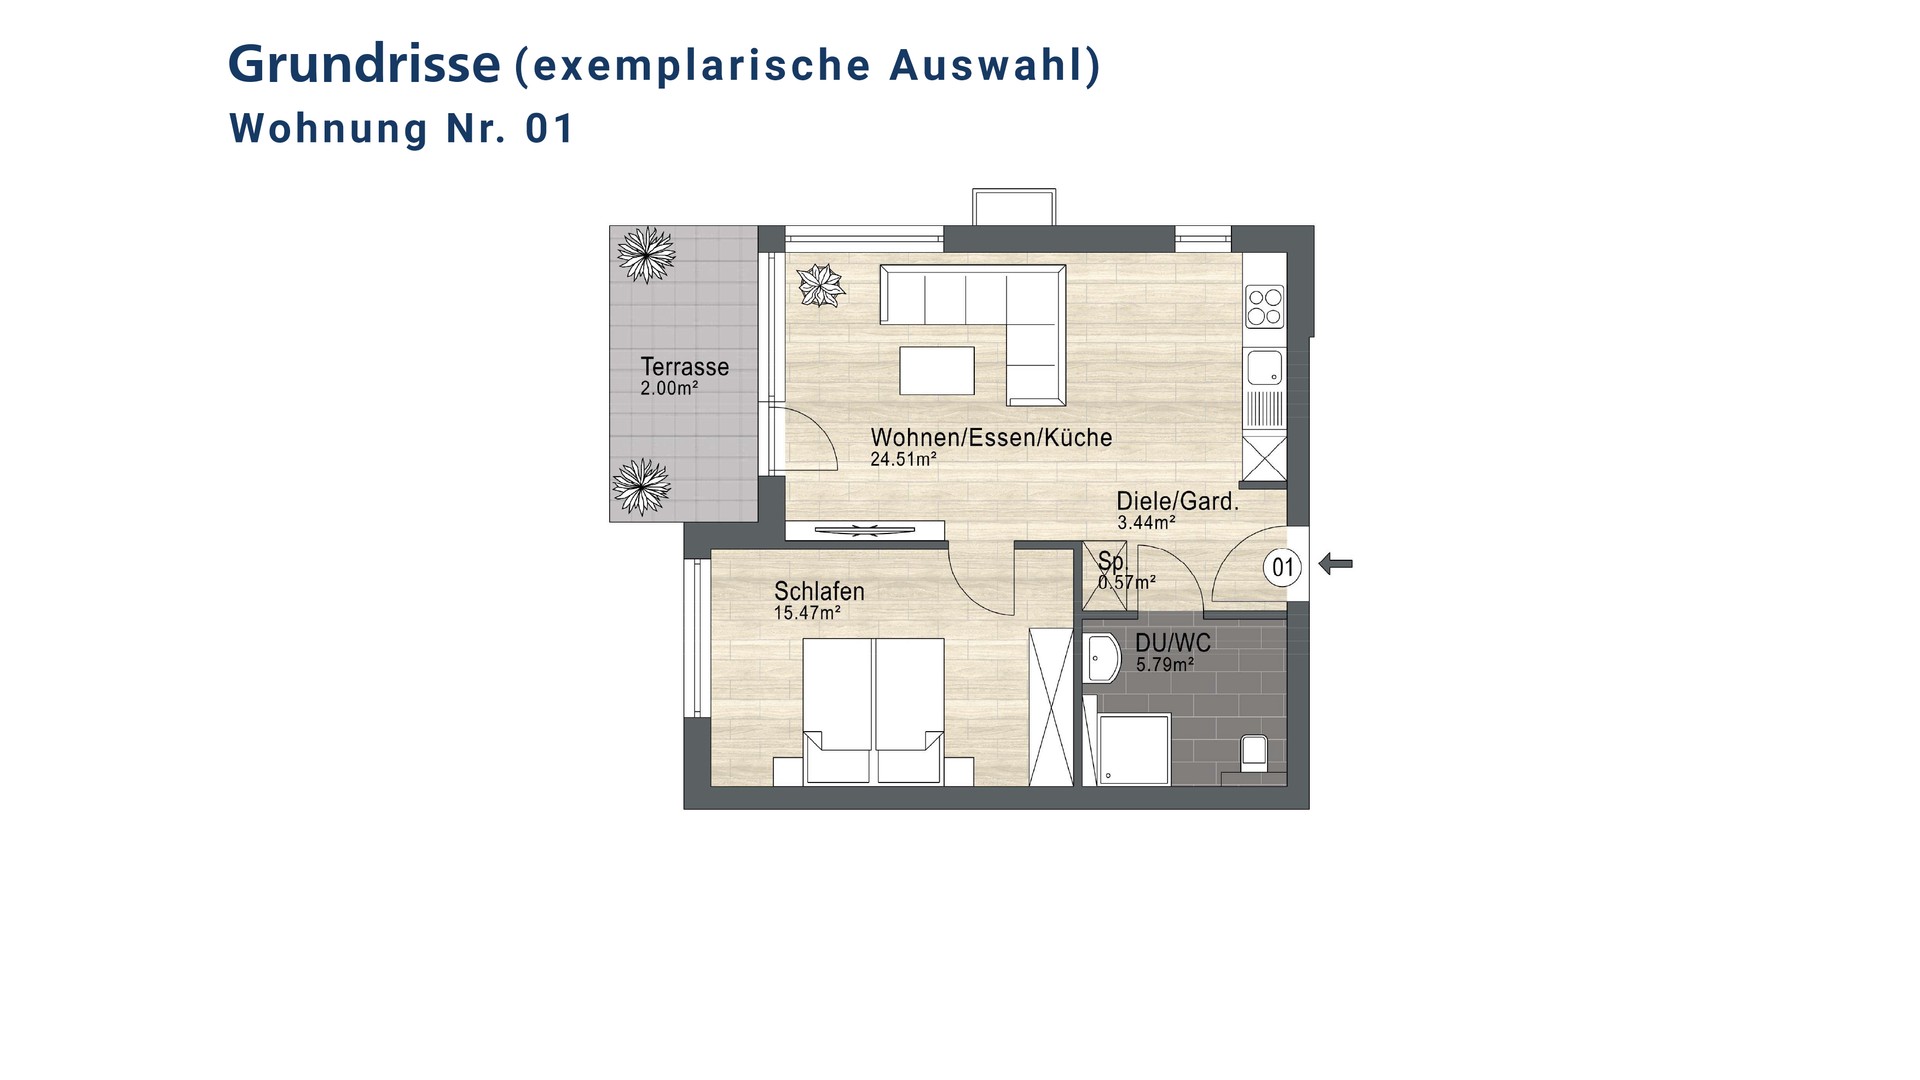 WE-01_Siegburg_Wohnung-kaufen_VR-Immobilien_Bonn-Rhein-Sieg.jpg
				